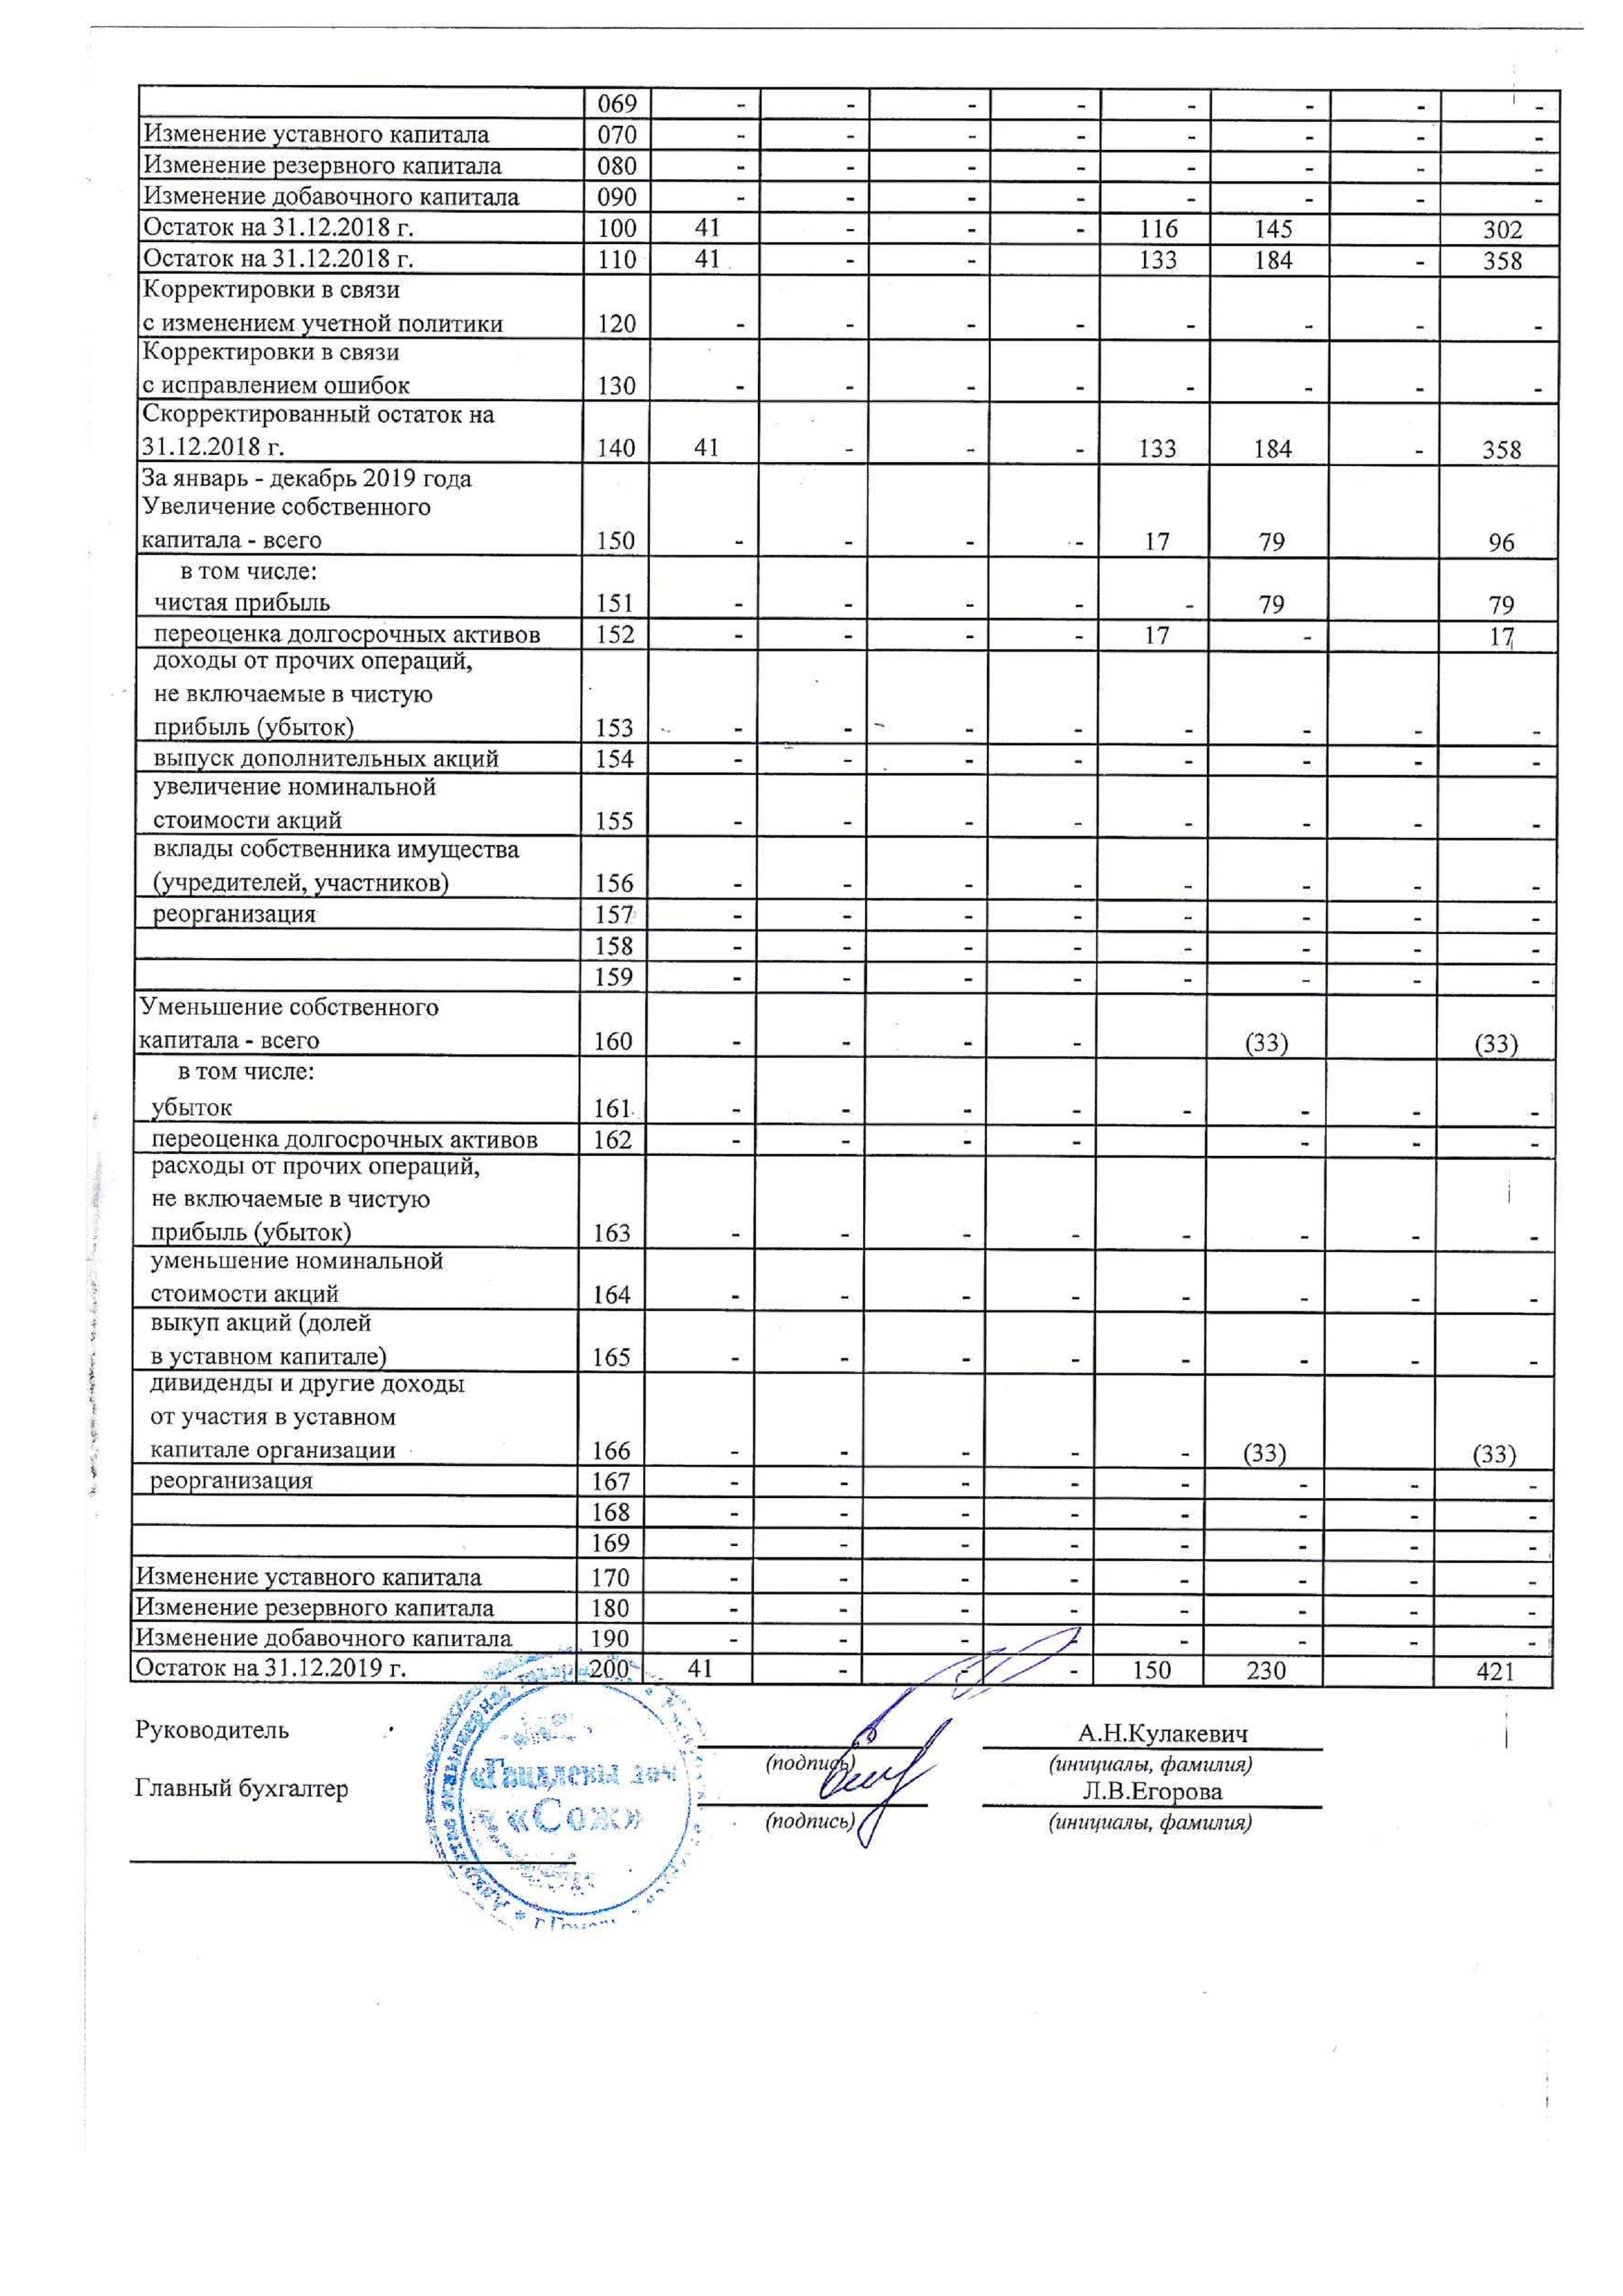 ОАО Торговый дом Сож - Отчет об изменении собственного капитала за январь-декабрь 2019